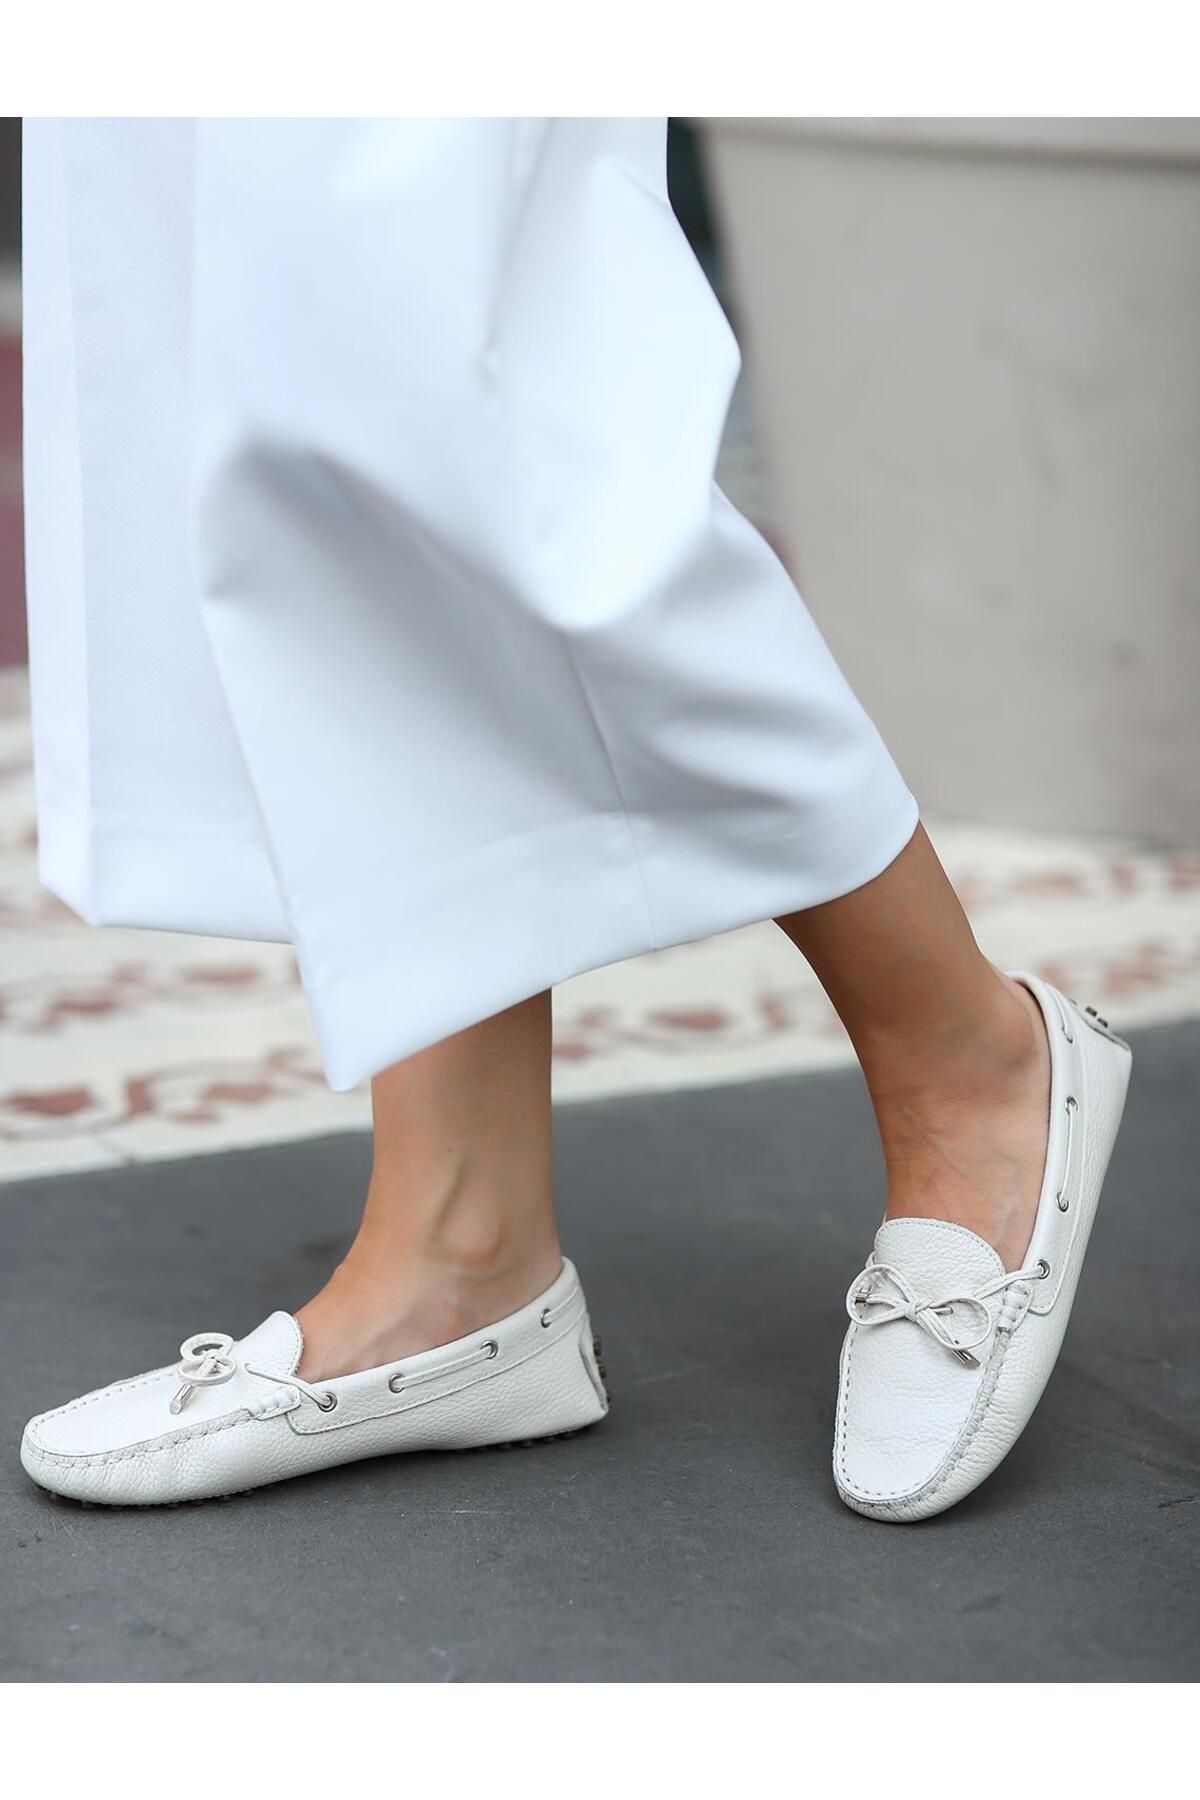 Cabani Hakiki Deri Beyaz Fiyonk Detaylı Kadın Loafer Ayakkabı